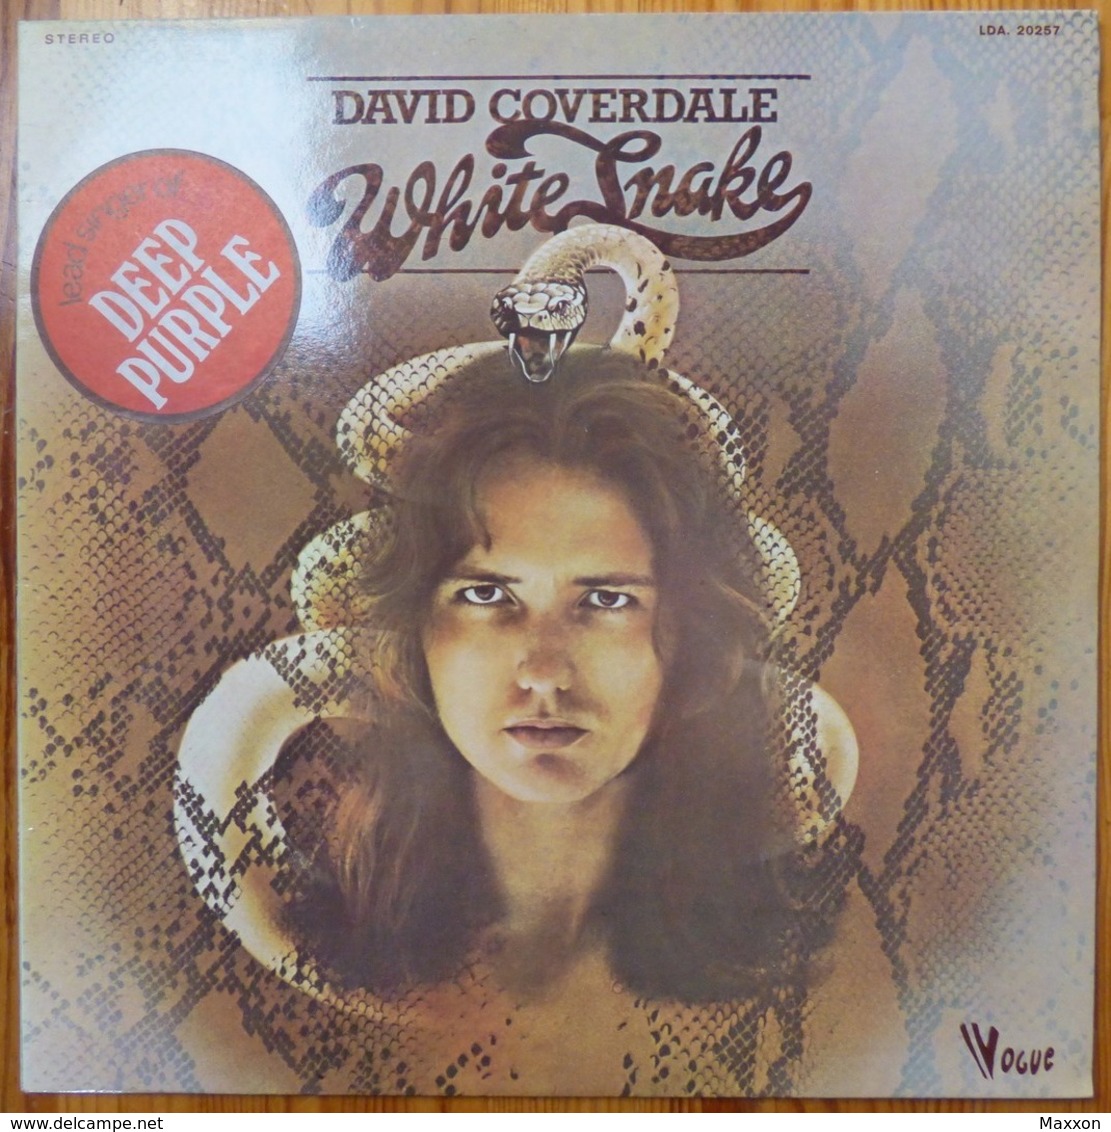 【LP】David Coverdale / Whitesnake